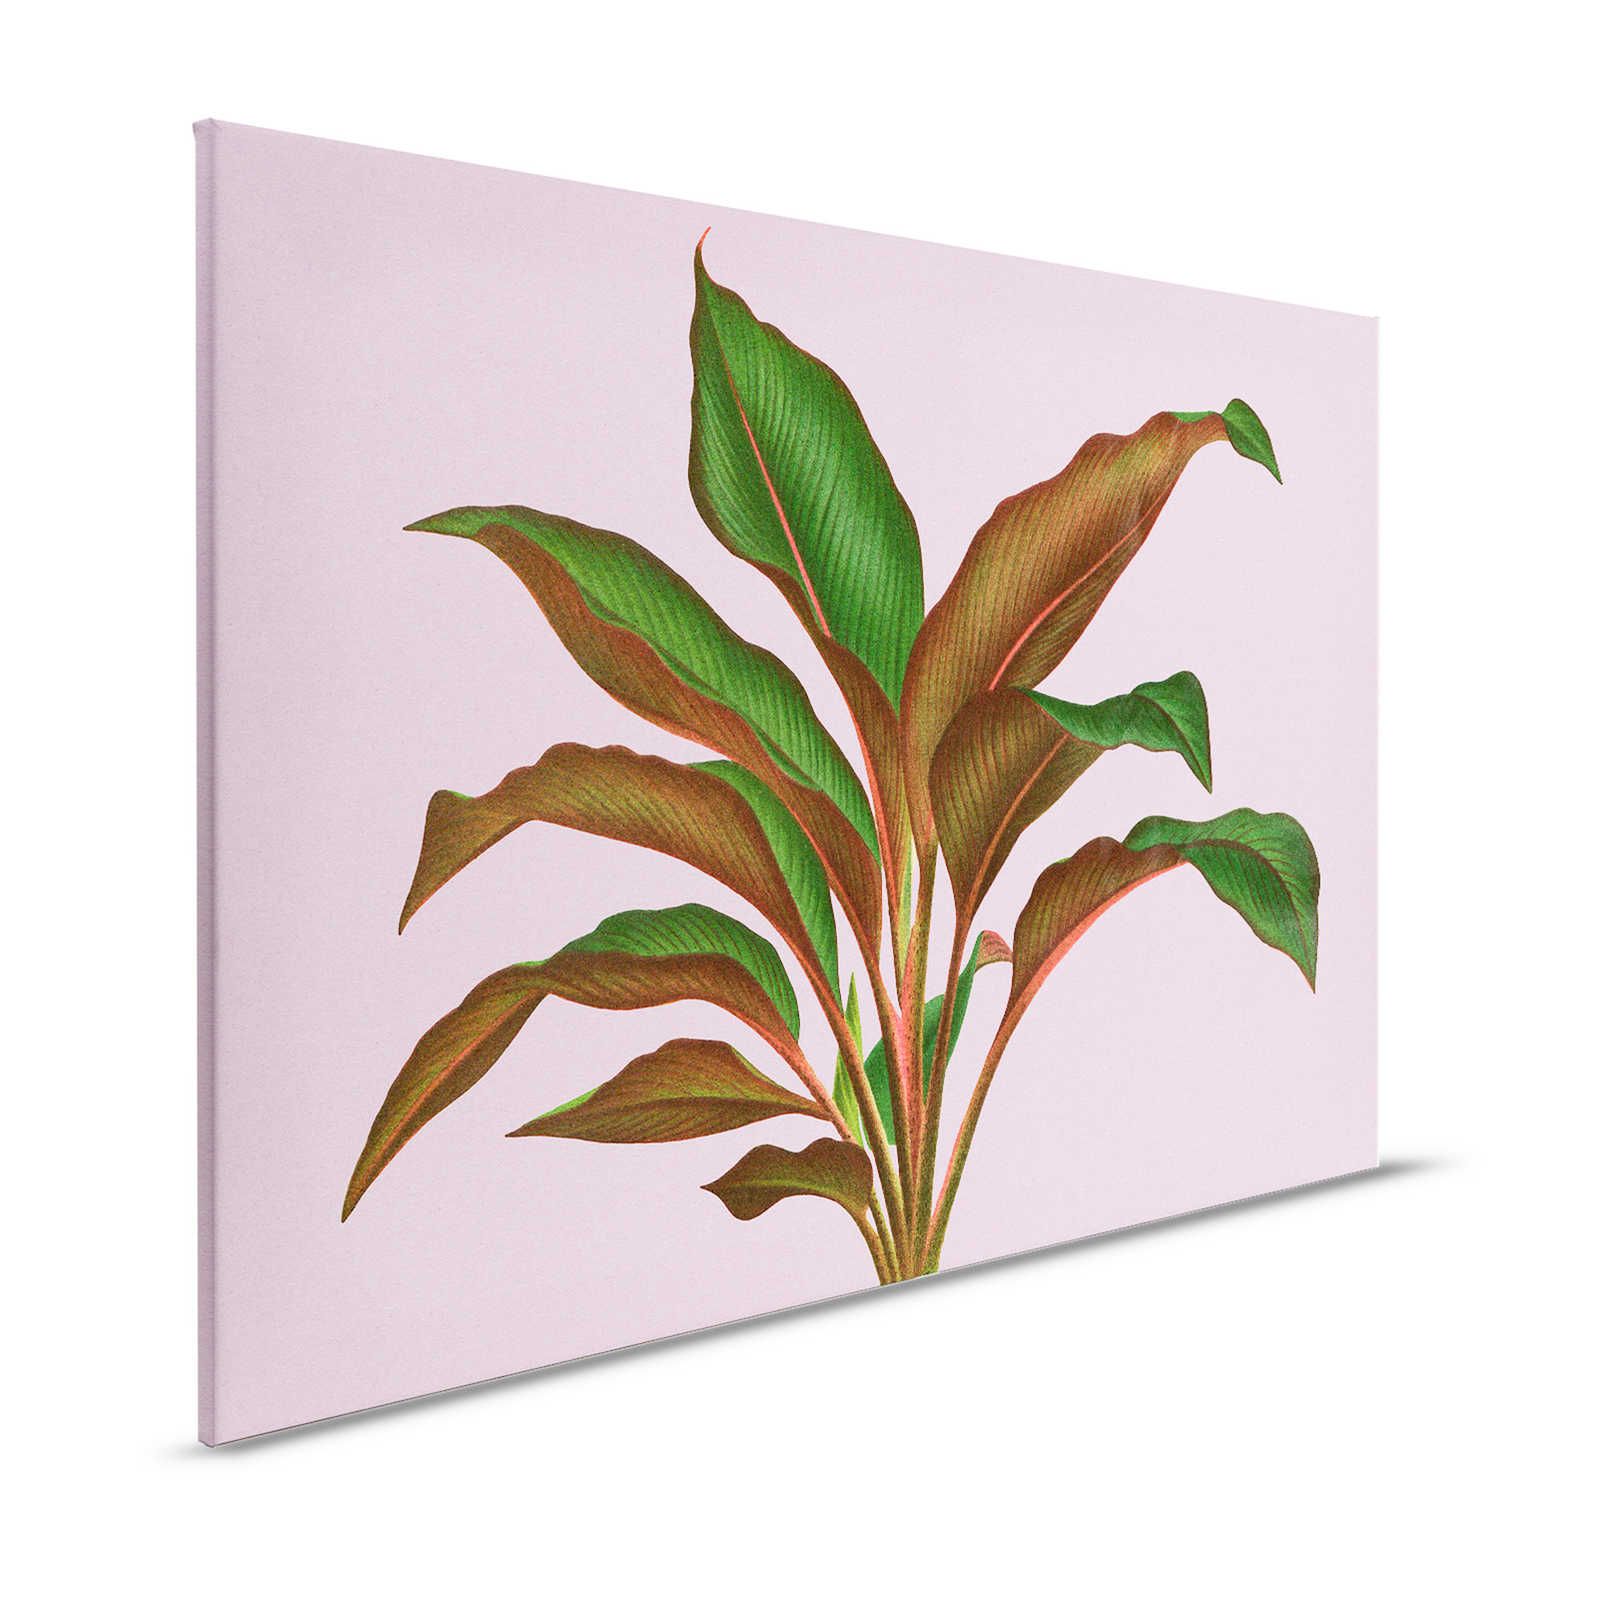 Leaf Garden 3 - Bladeren Canvas schilderij Roze met tropisch varenblad - 1.20 m x 0.80 m
